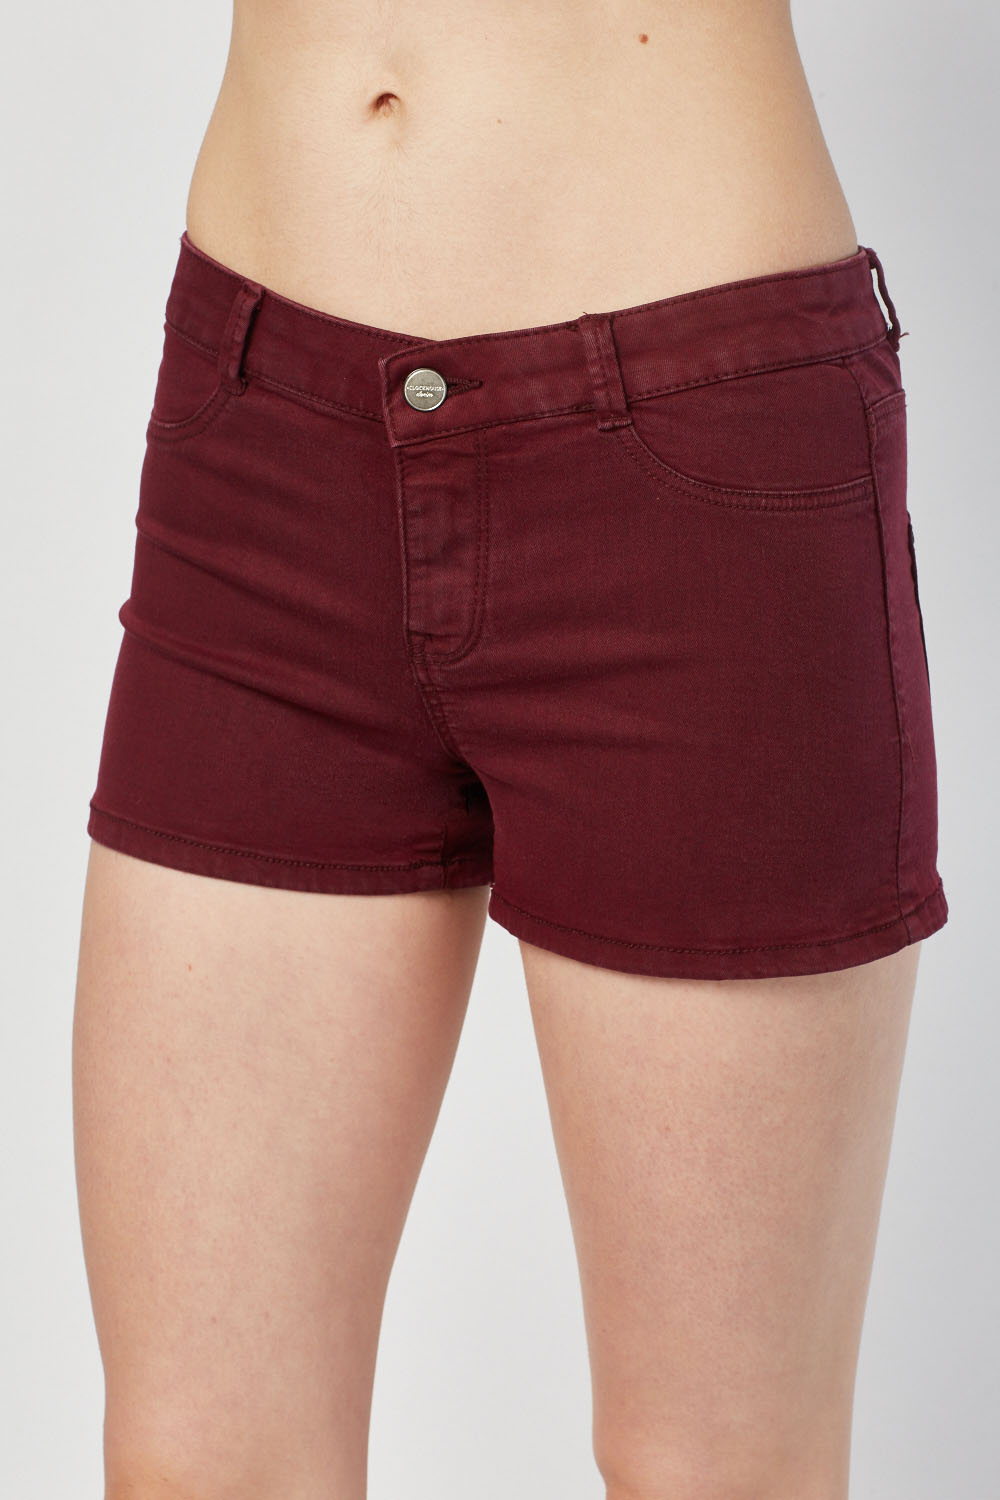 Low Waist Denim Mini Shorts Just 3